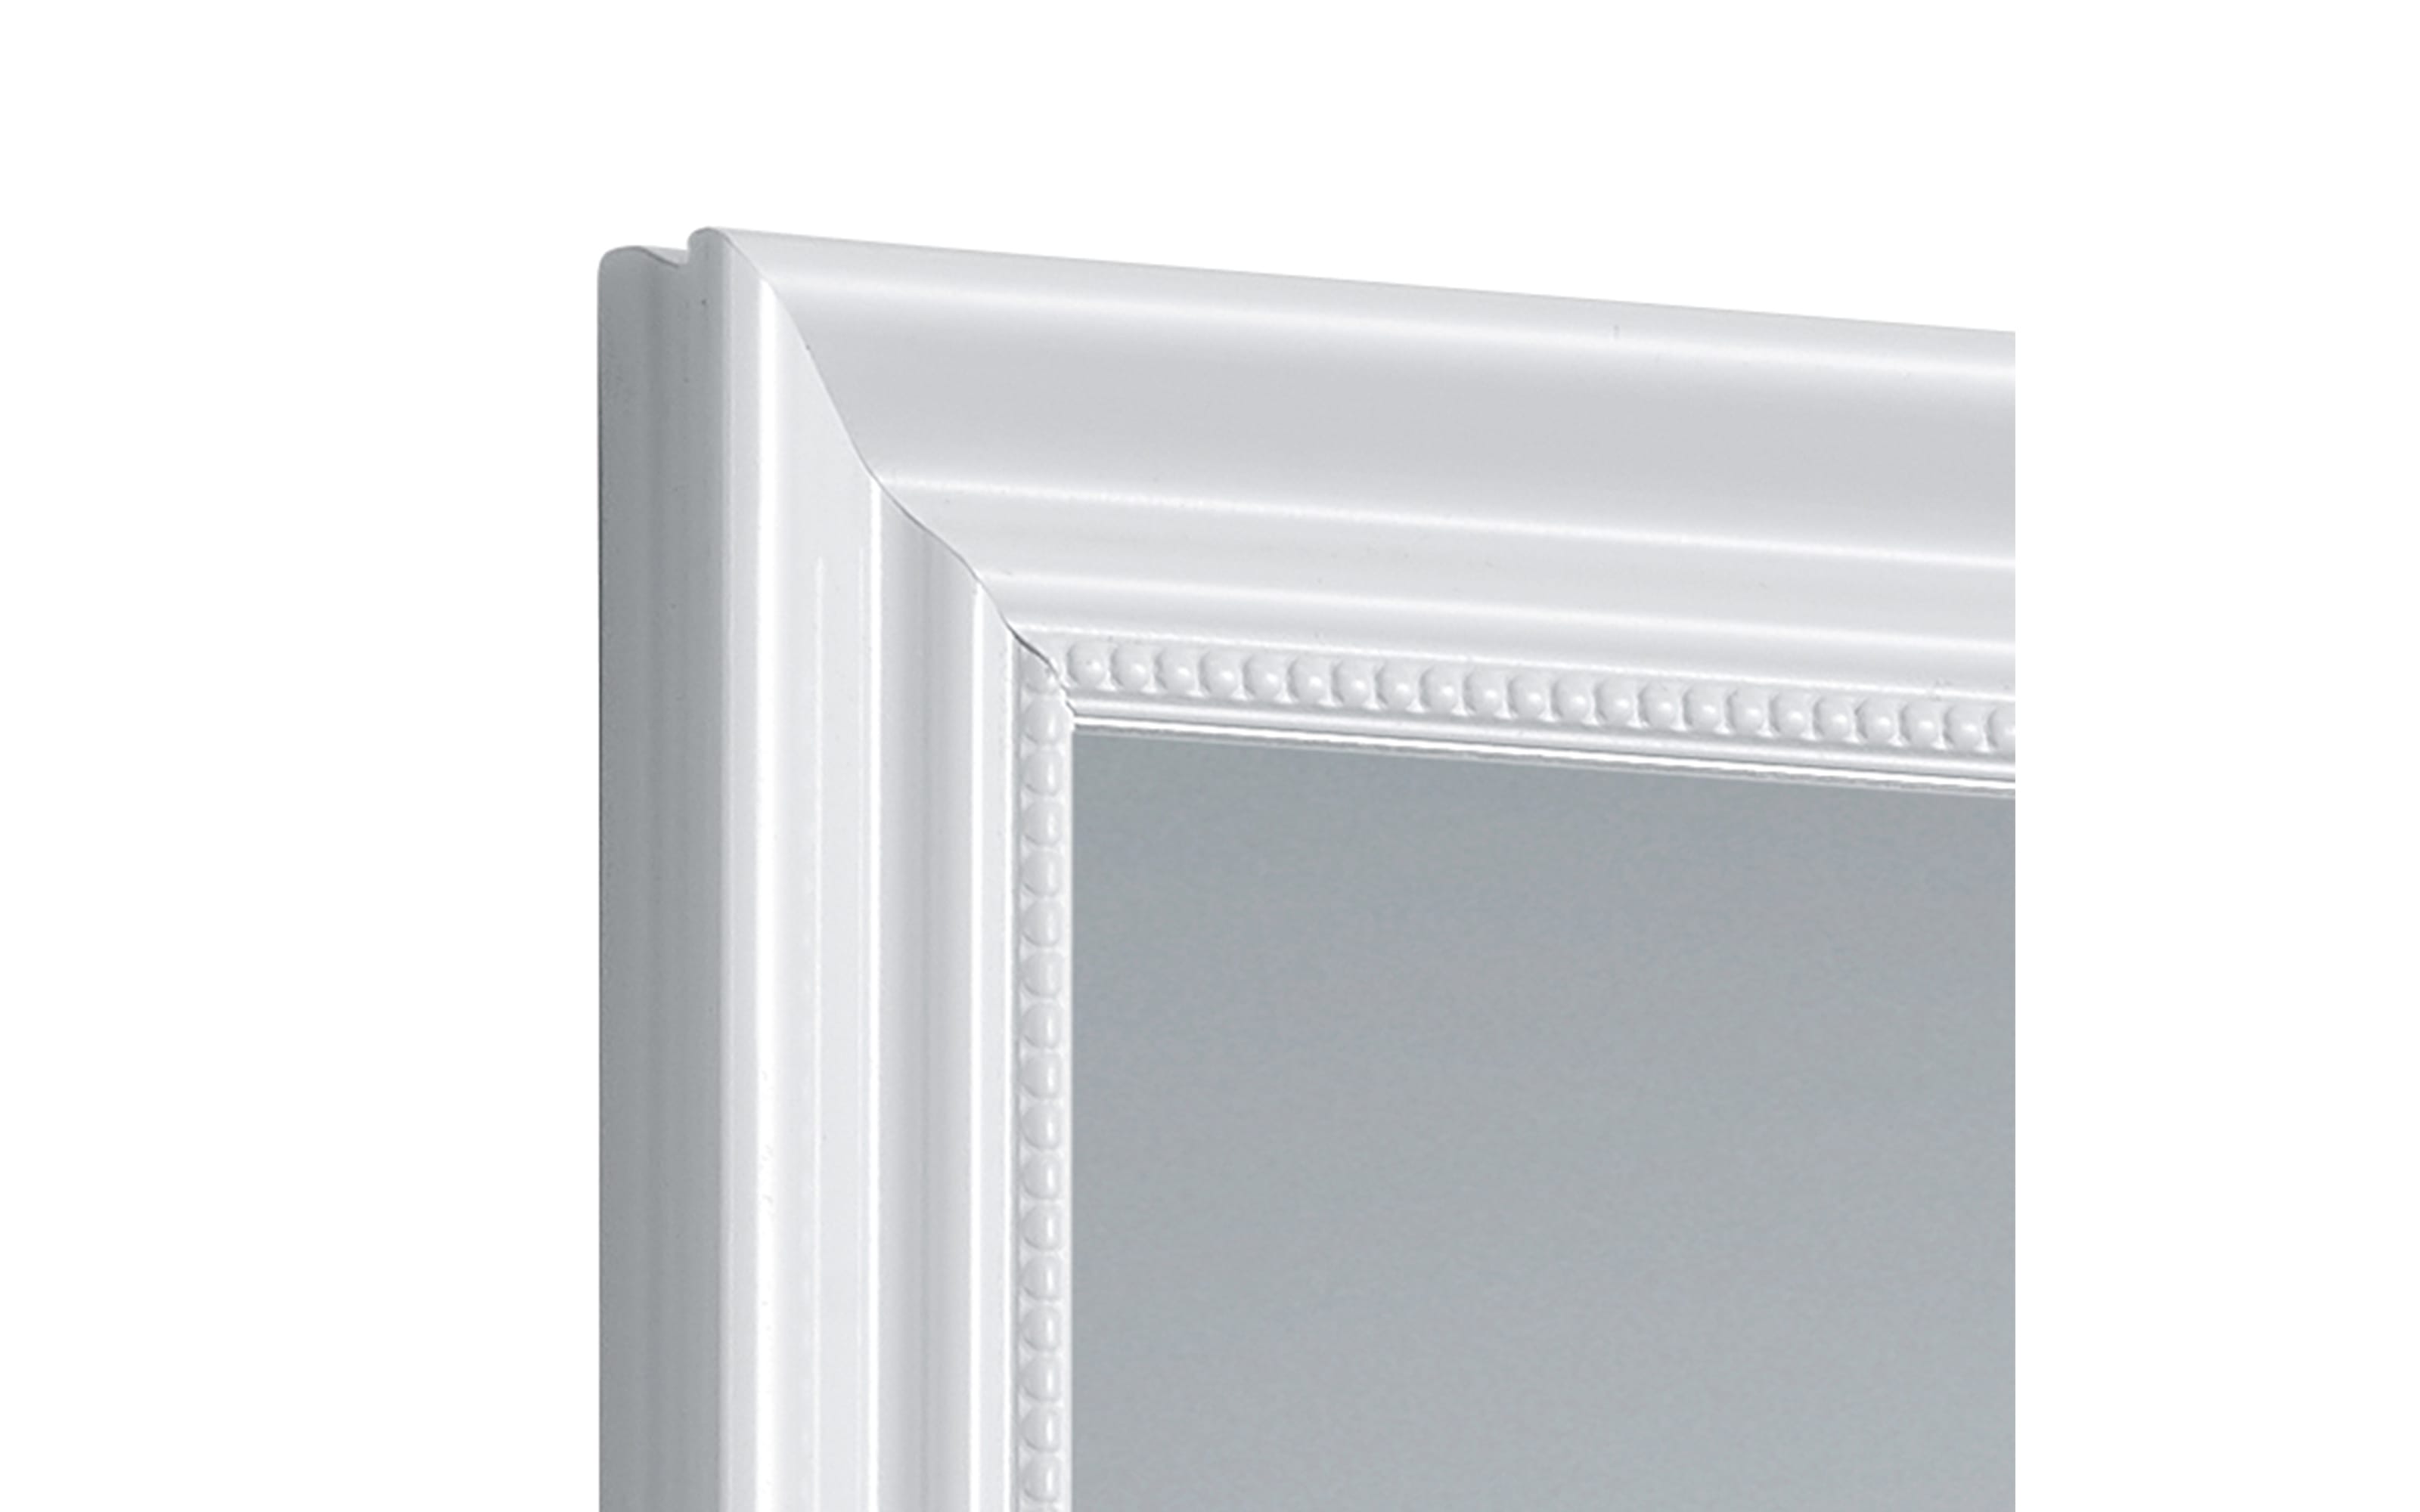 Rahmenspiegel Karina, weiß, 50 x 70 cm